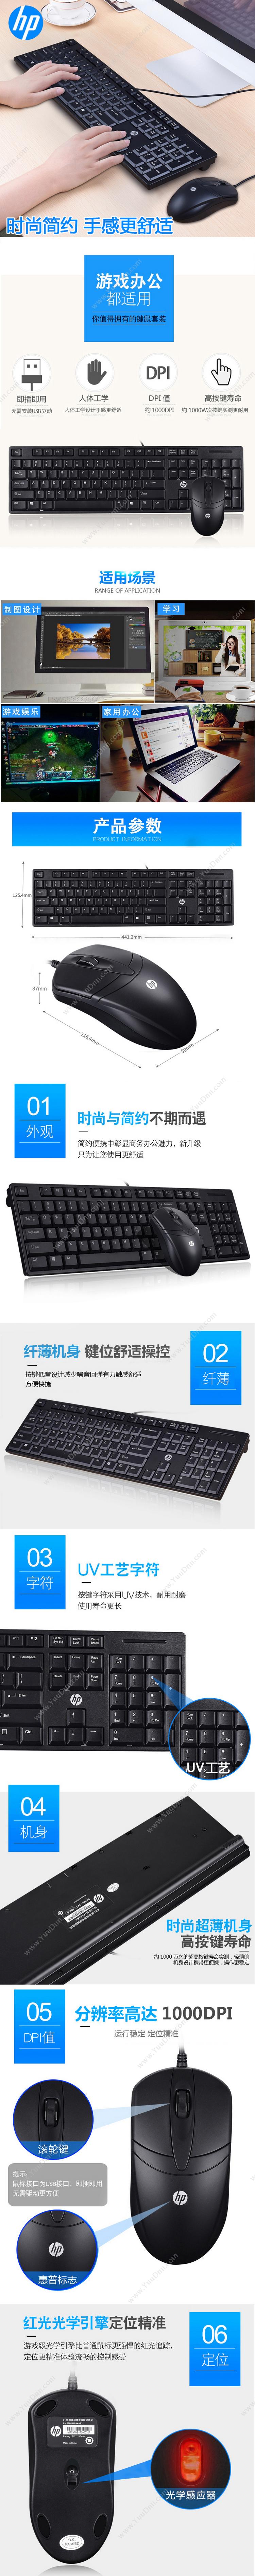 物公基租赁 K100 USB超薄键盘鼠标套装黑色 键盘鼠标